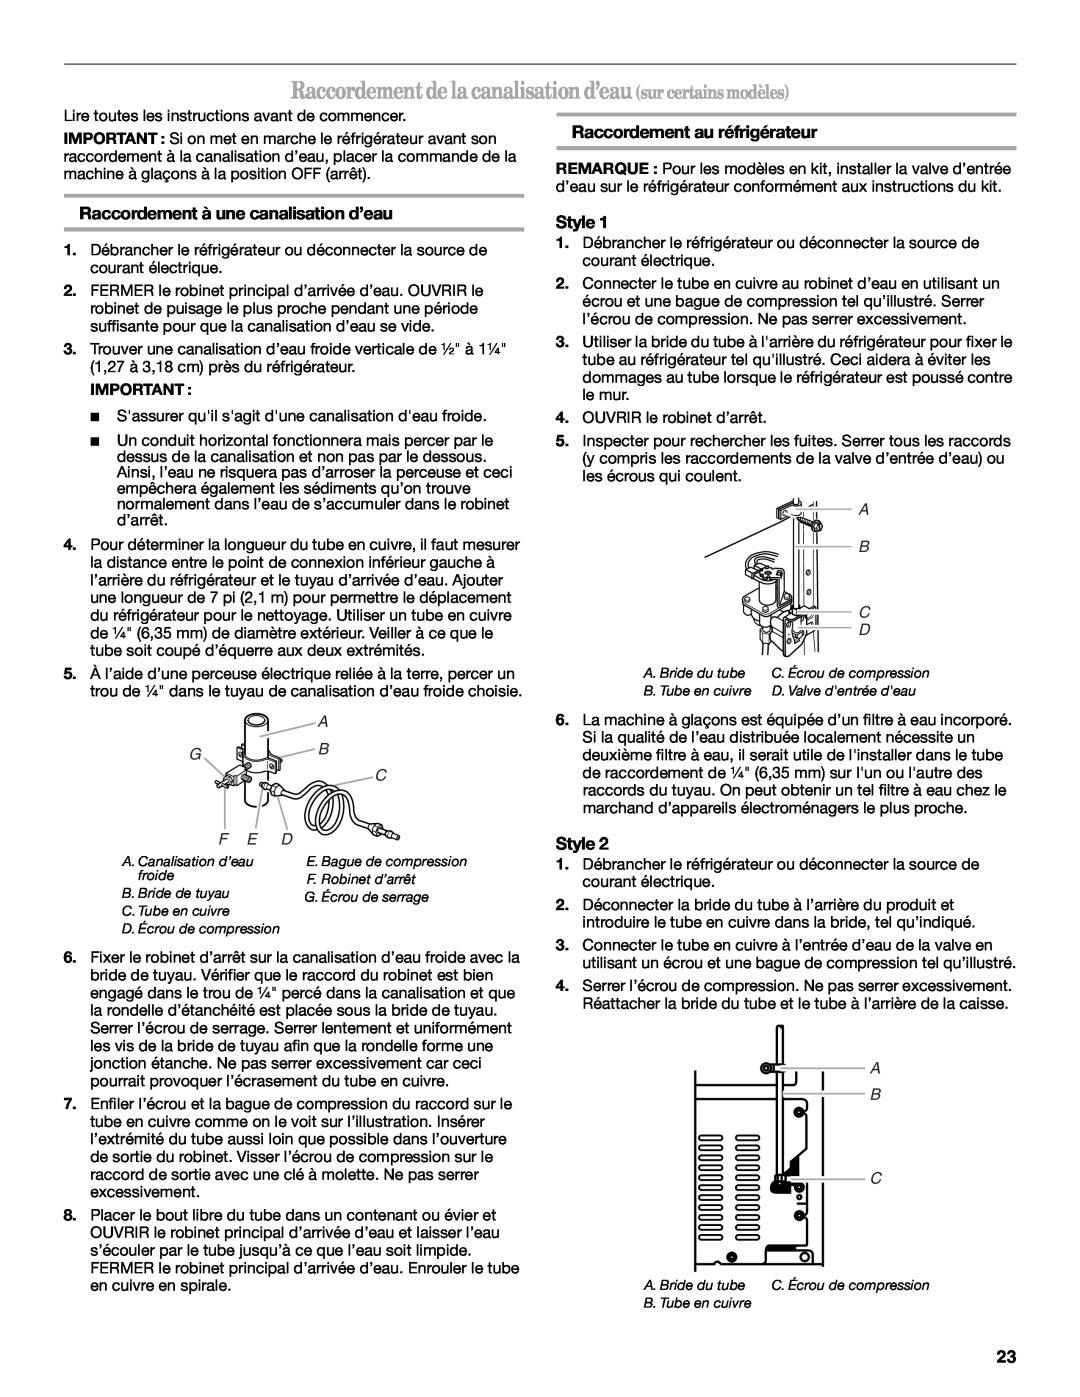 Amana W10162526A manual Raccordement au réfrigérateur, Raccordement à une canalisation d’eau, Style, A B C 